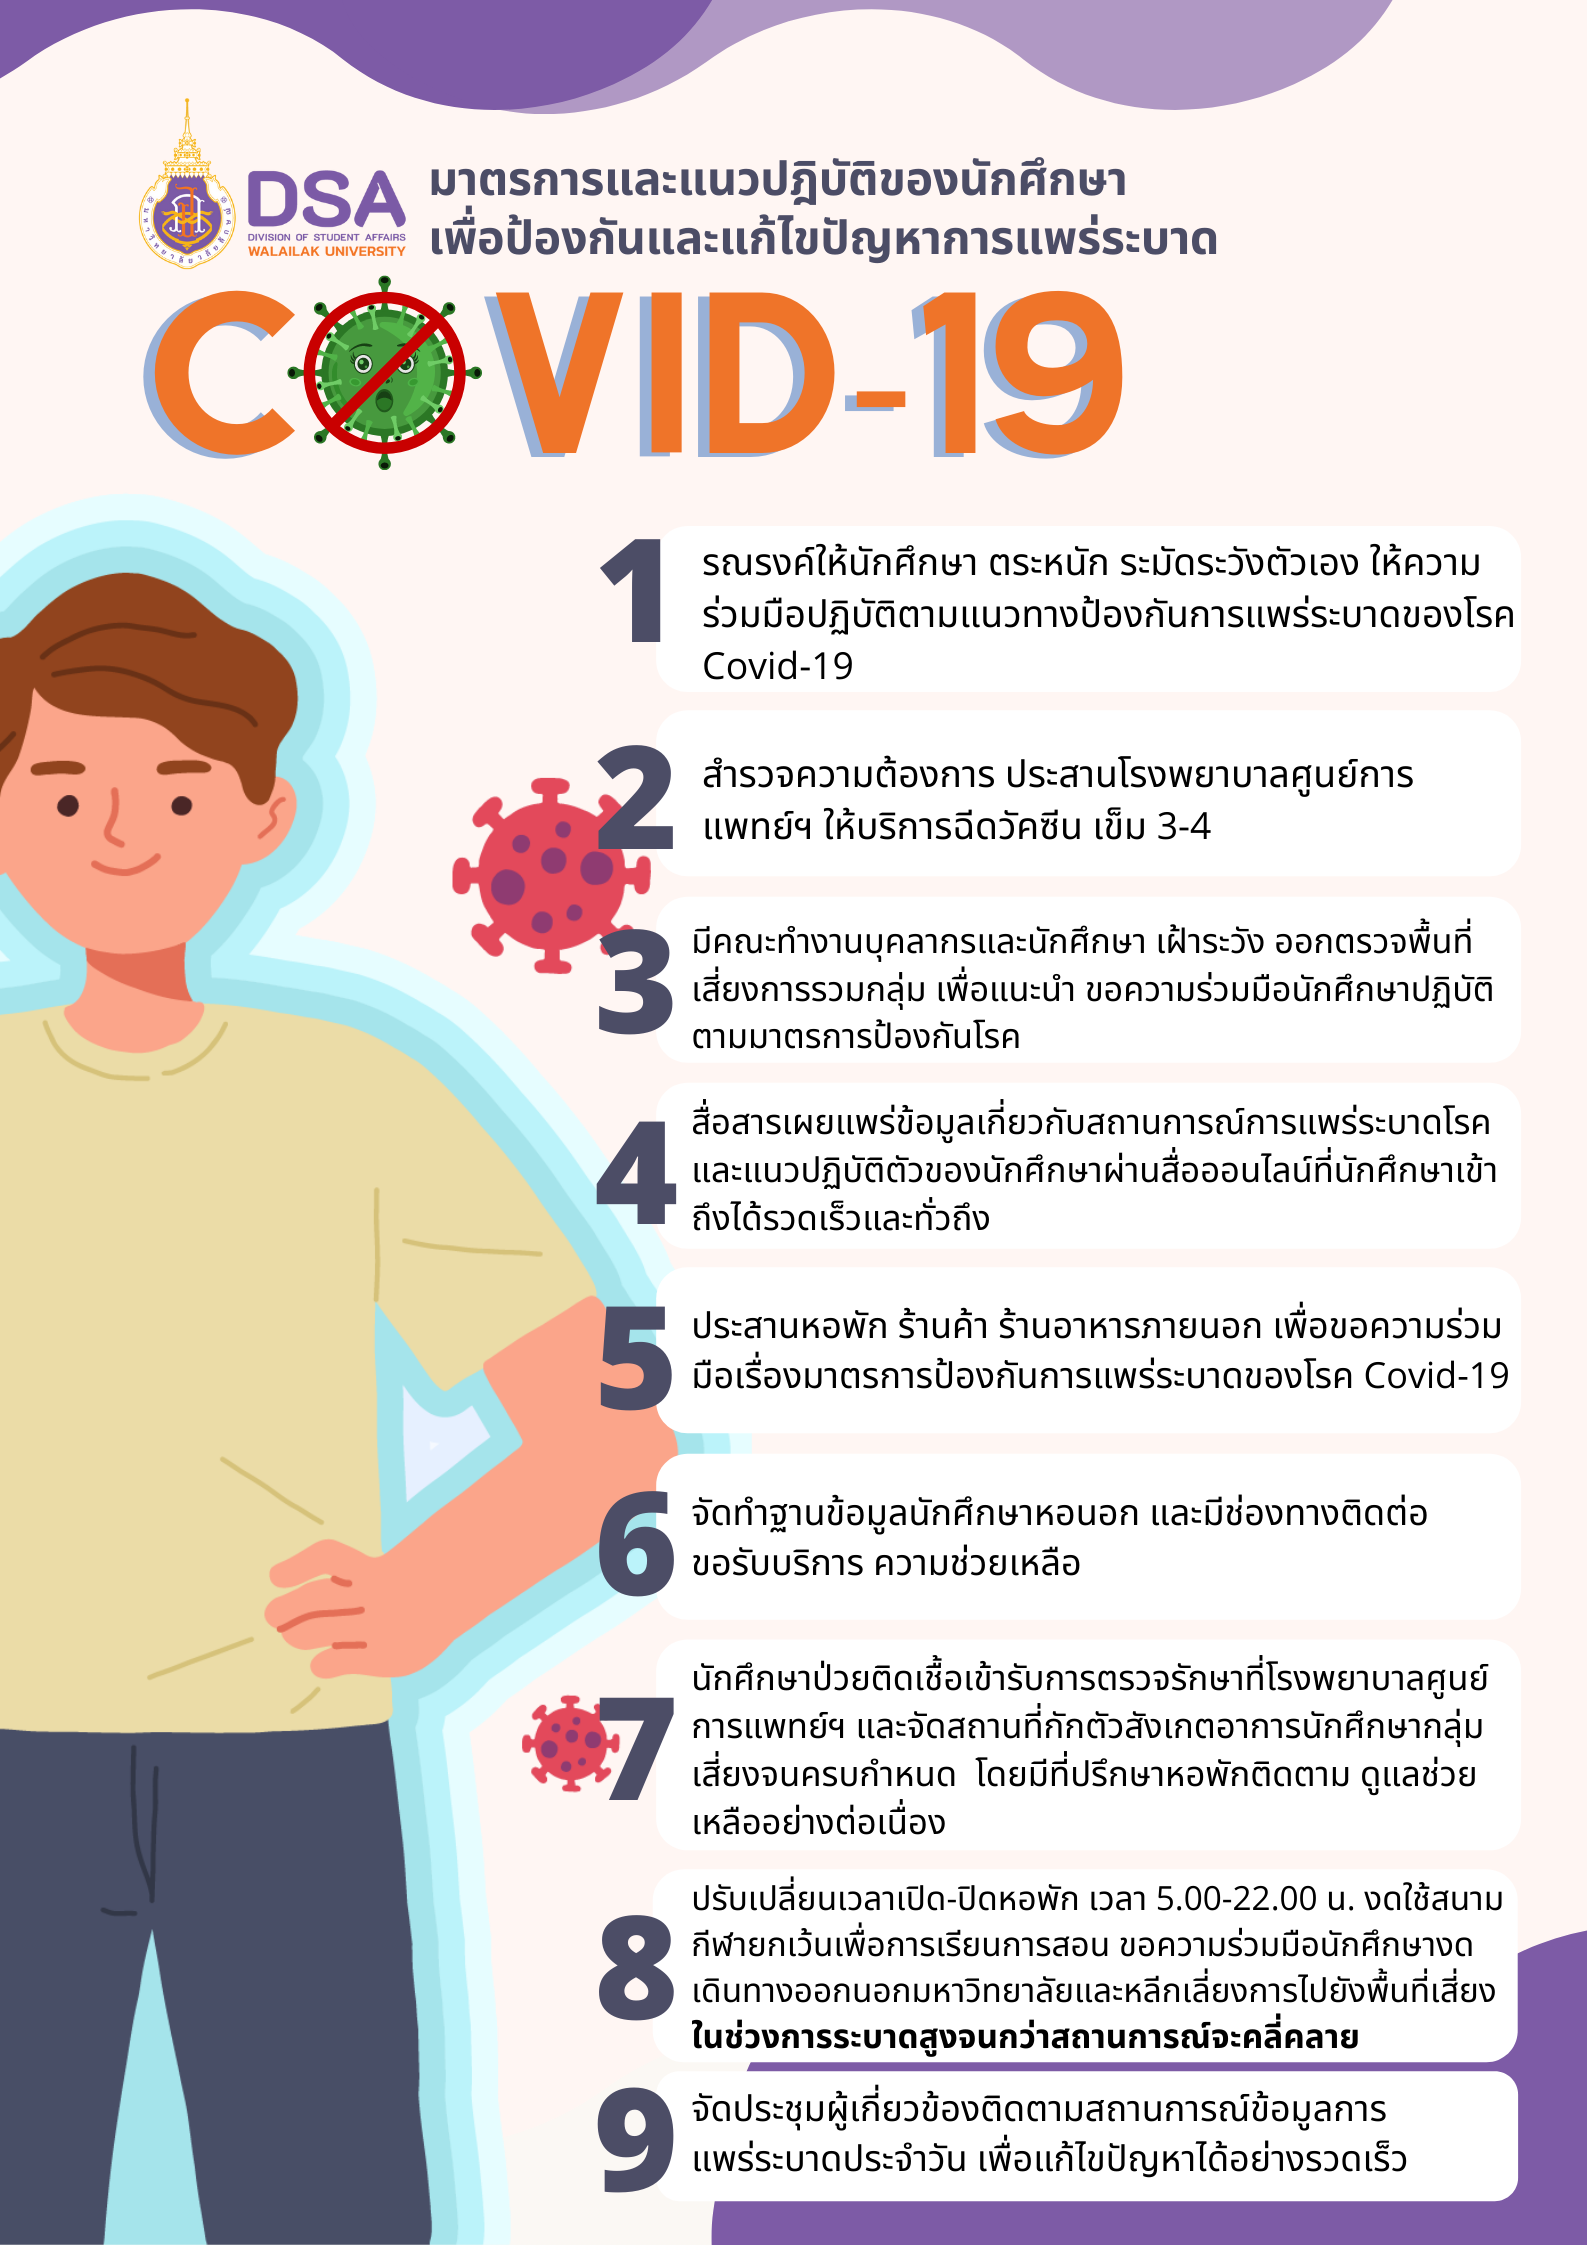 มาตรการและแนวปฎิบัติของนักศึกษา เพื่อป้องกันและแก้ไขปัญหาการแพร่ระบาดของเชื้อไวรัสโควิด-19